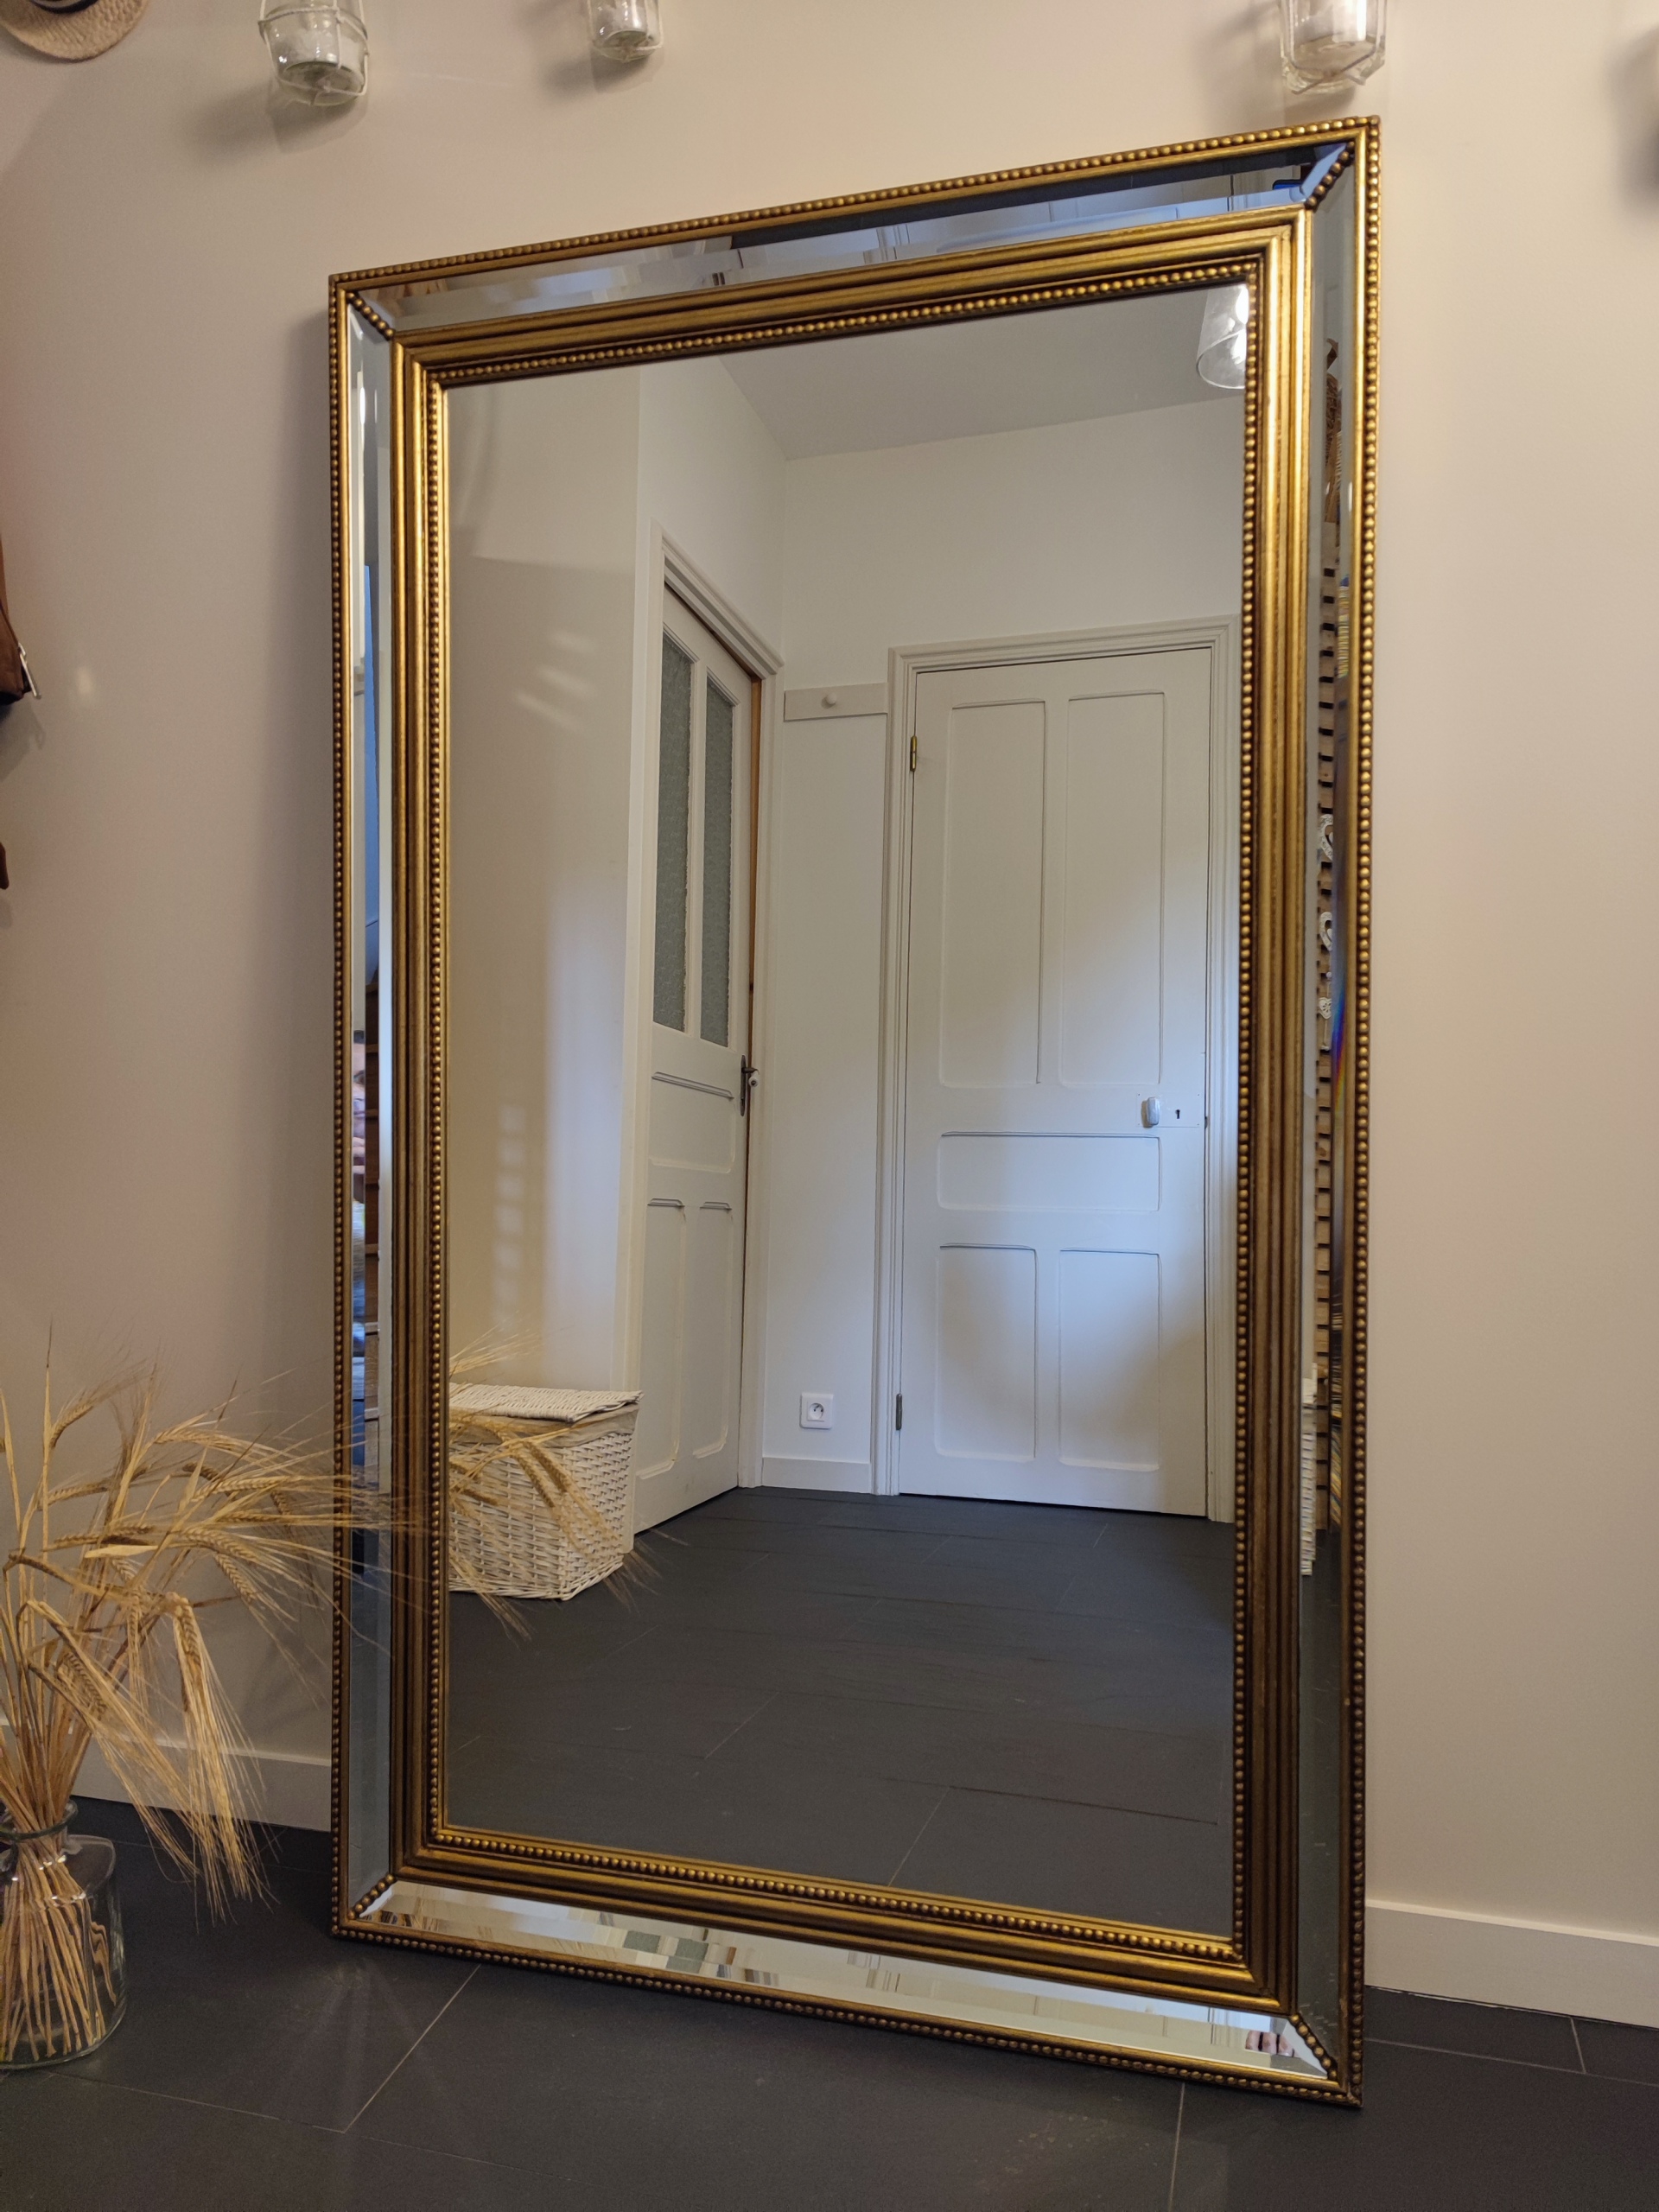 Ancien miroir de cheminée dont il ne restait plus que le cadre, "Jade" est devenu un beau miroir en pied. Son cadre doré patiné et sa petite bande de miroir au centre des dorures lui confèrent un look peu commun.